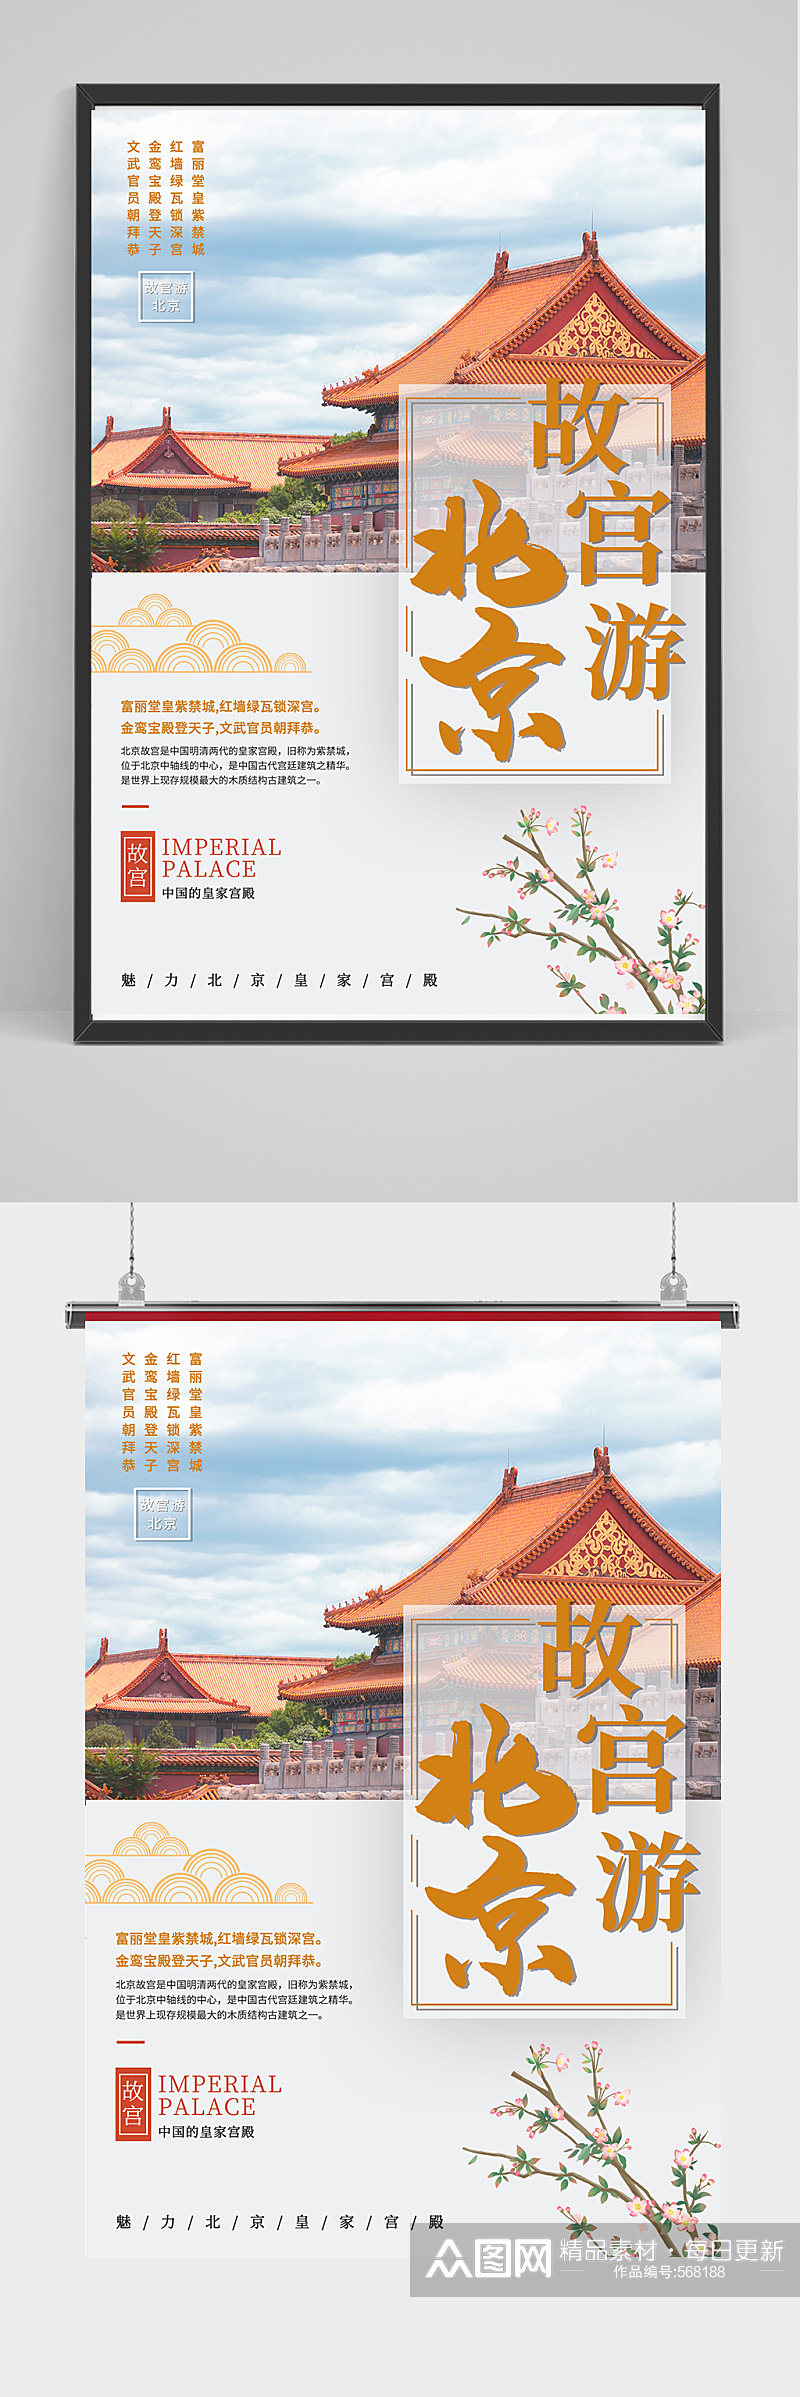 简约北京故宫之旅旅游海报素材